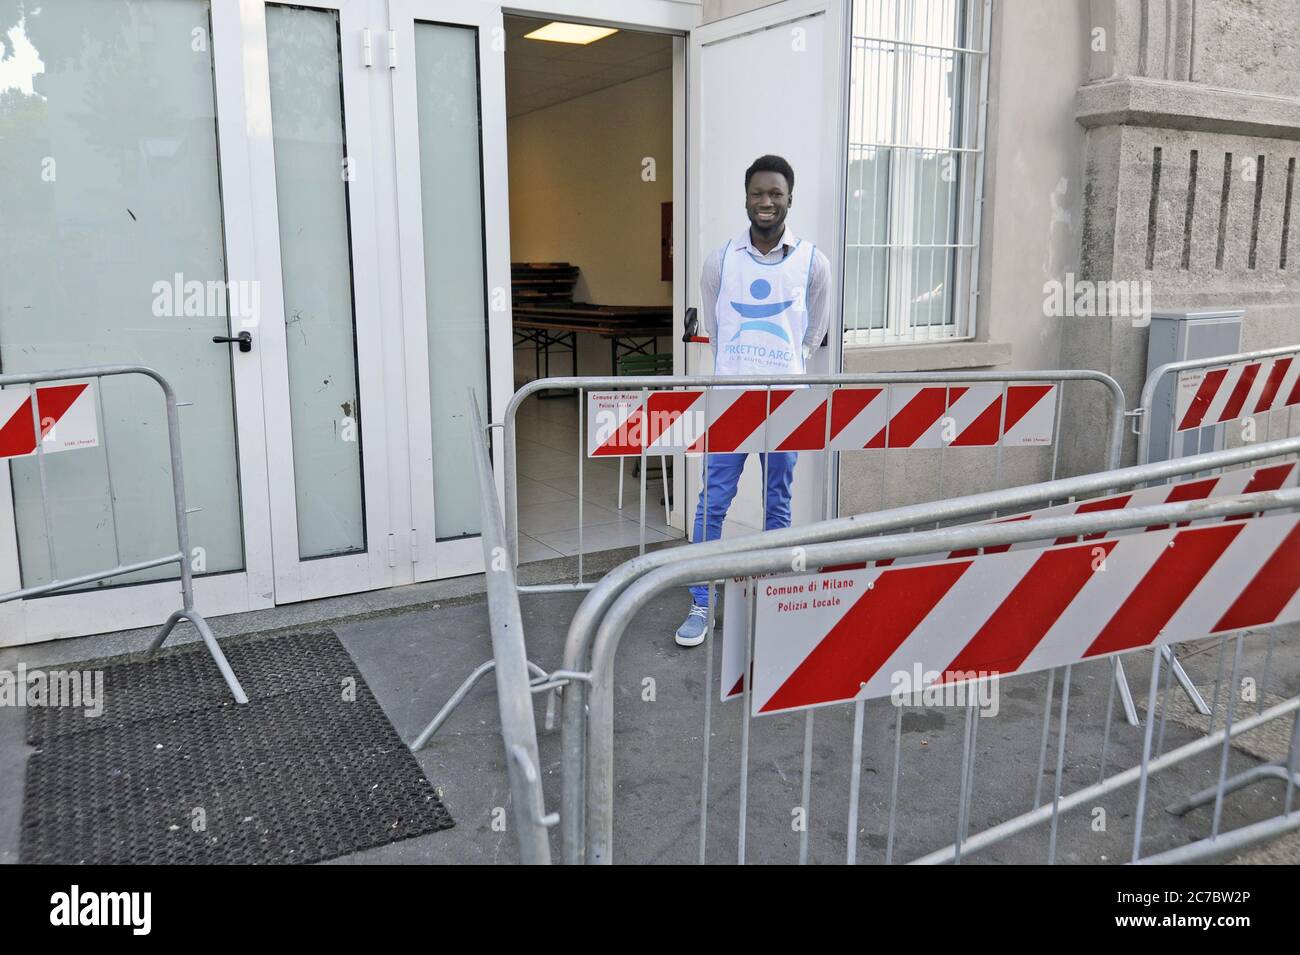 Milano (Italia), centro di smistamento per rifugiati e richiedenti asilo organizzato in via Sammartini, sotto la Stazione Centrale, e affidato alla direzione dell'organizzazione ONG progetto Arca Foto Stock